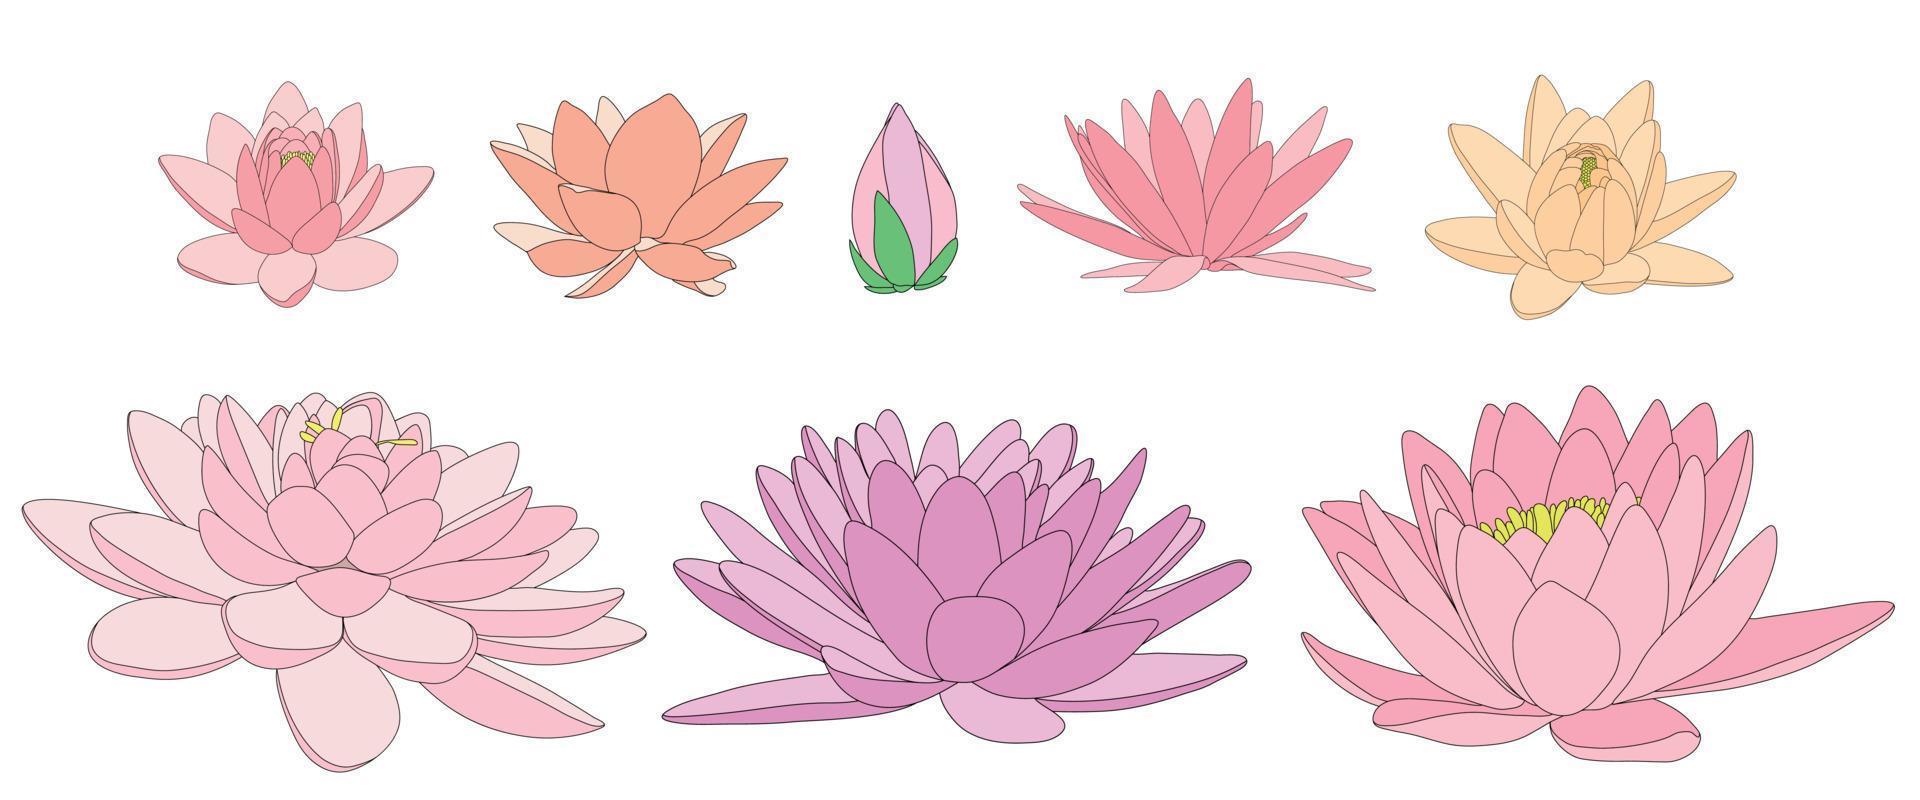 fleurs de lotus de différentes fleurs et formes. illustration en noir et blanc de différents types de nénuphars. vecteur